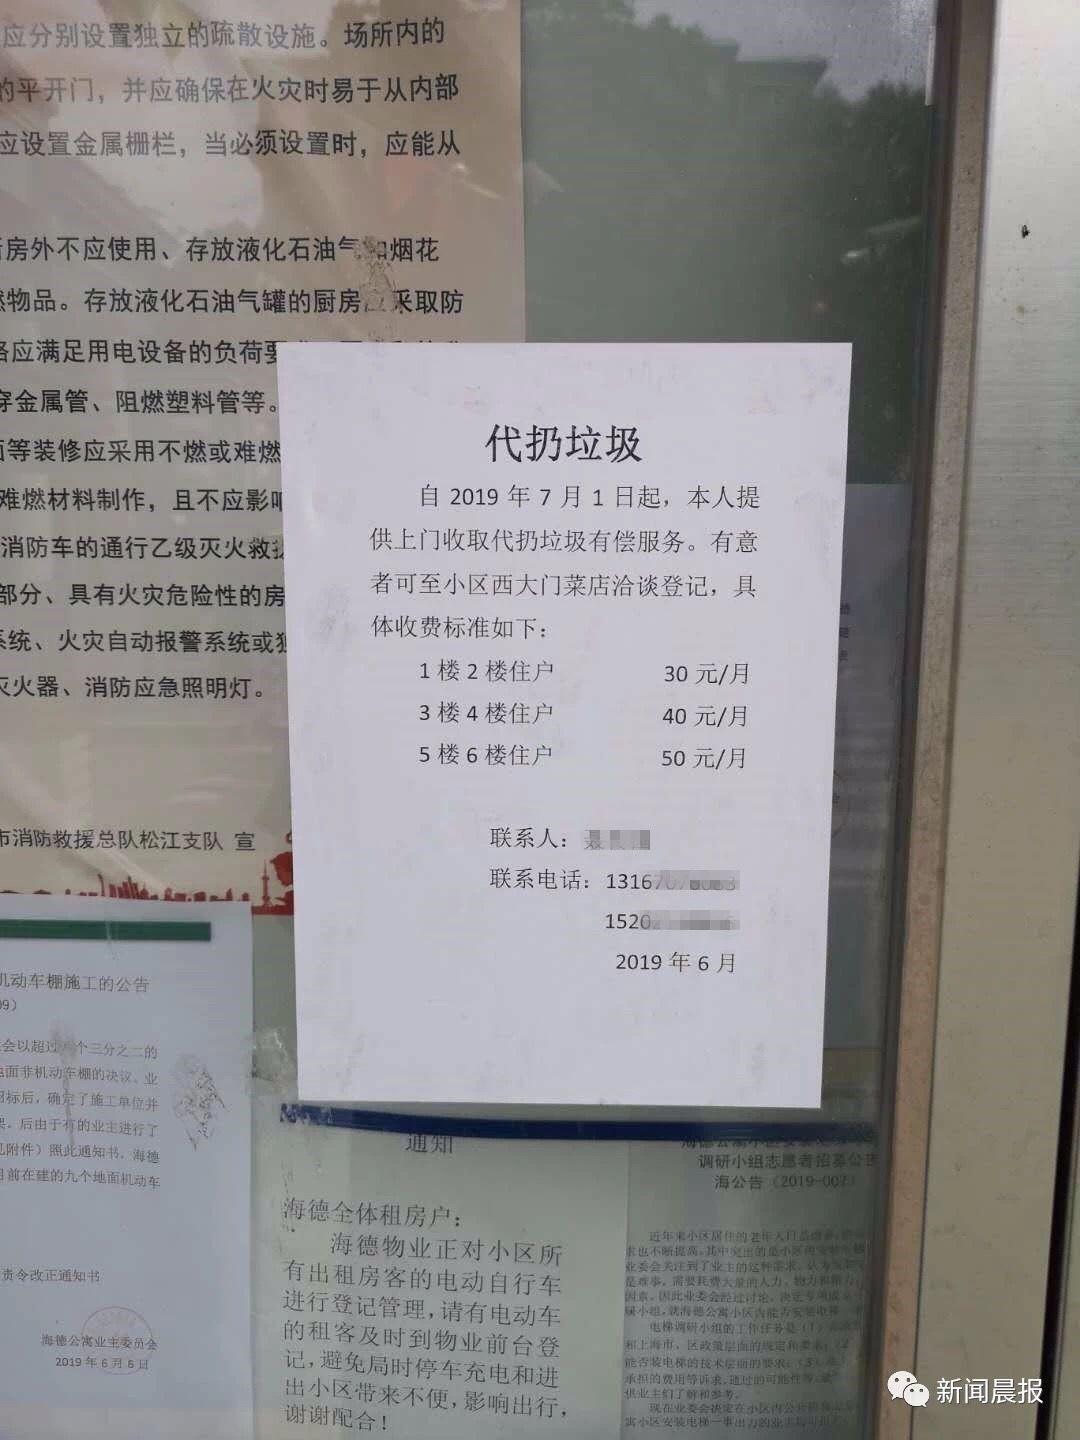 在我们上海居民被垃圾逼疯时，有人已找到了商机